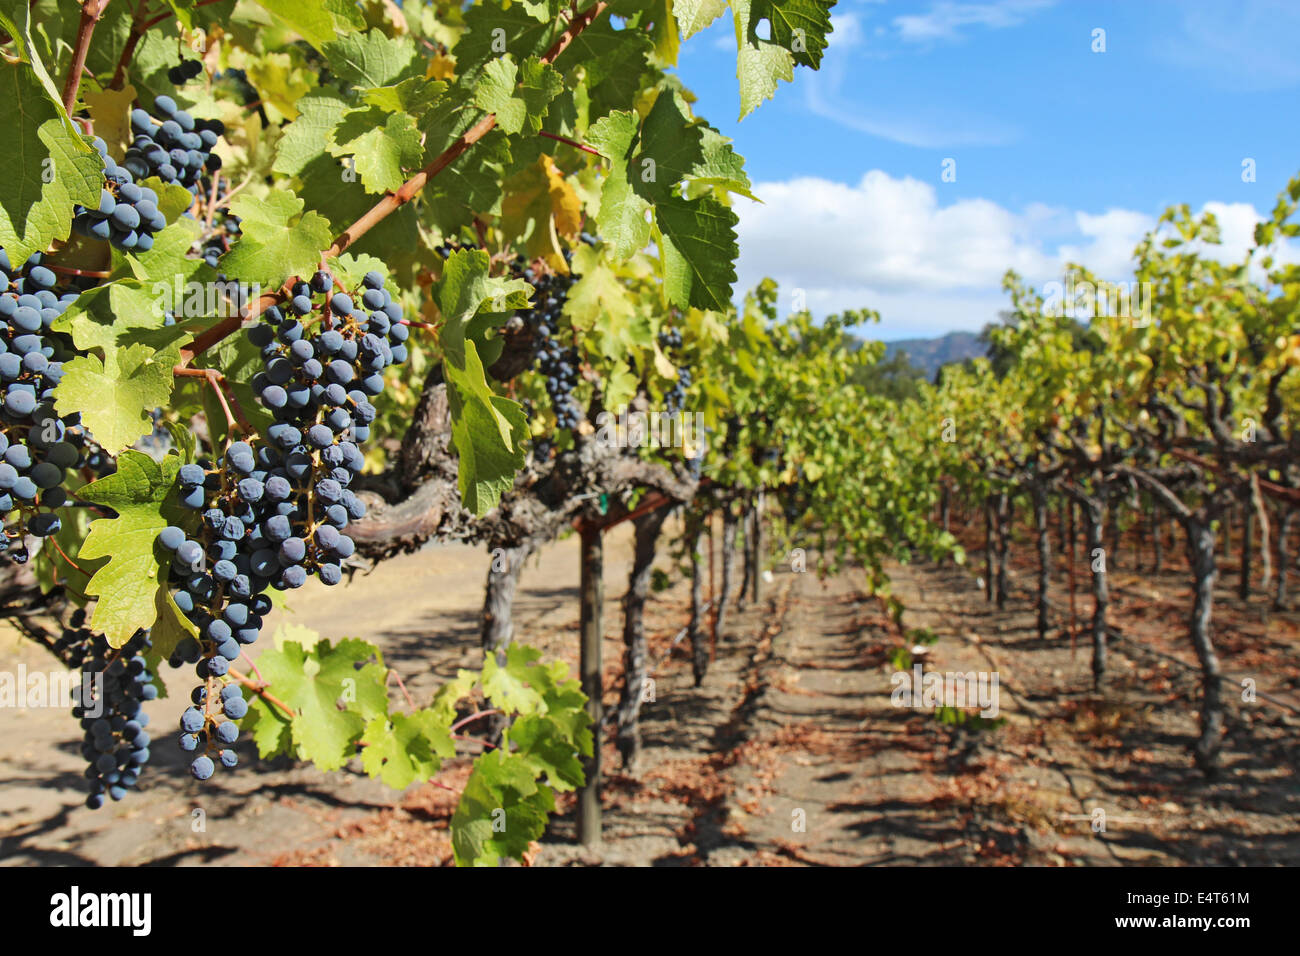 Une faible profondeur de champ met en lumière mûres, raisins de pourpre accroché sur la vigne à un vignoble dans la Napa Valley, près de Calistoga Banque D'Images